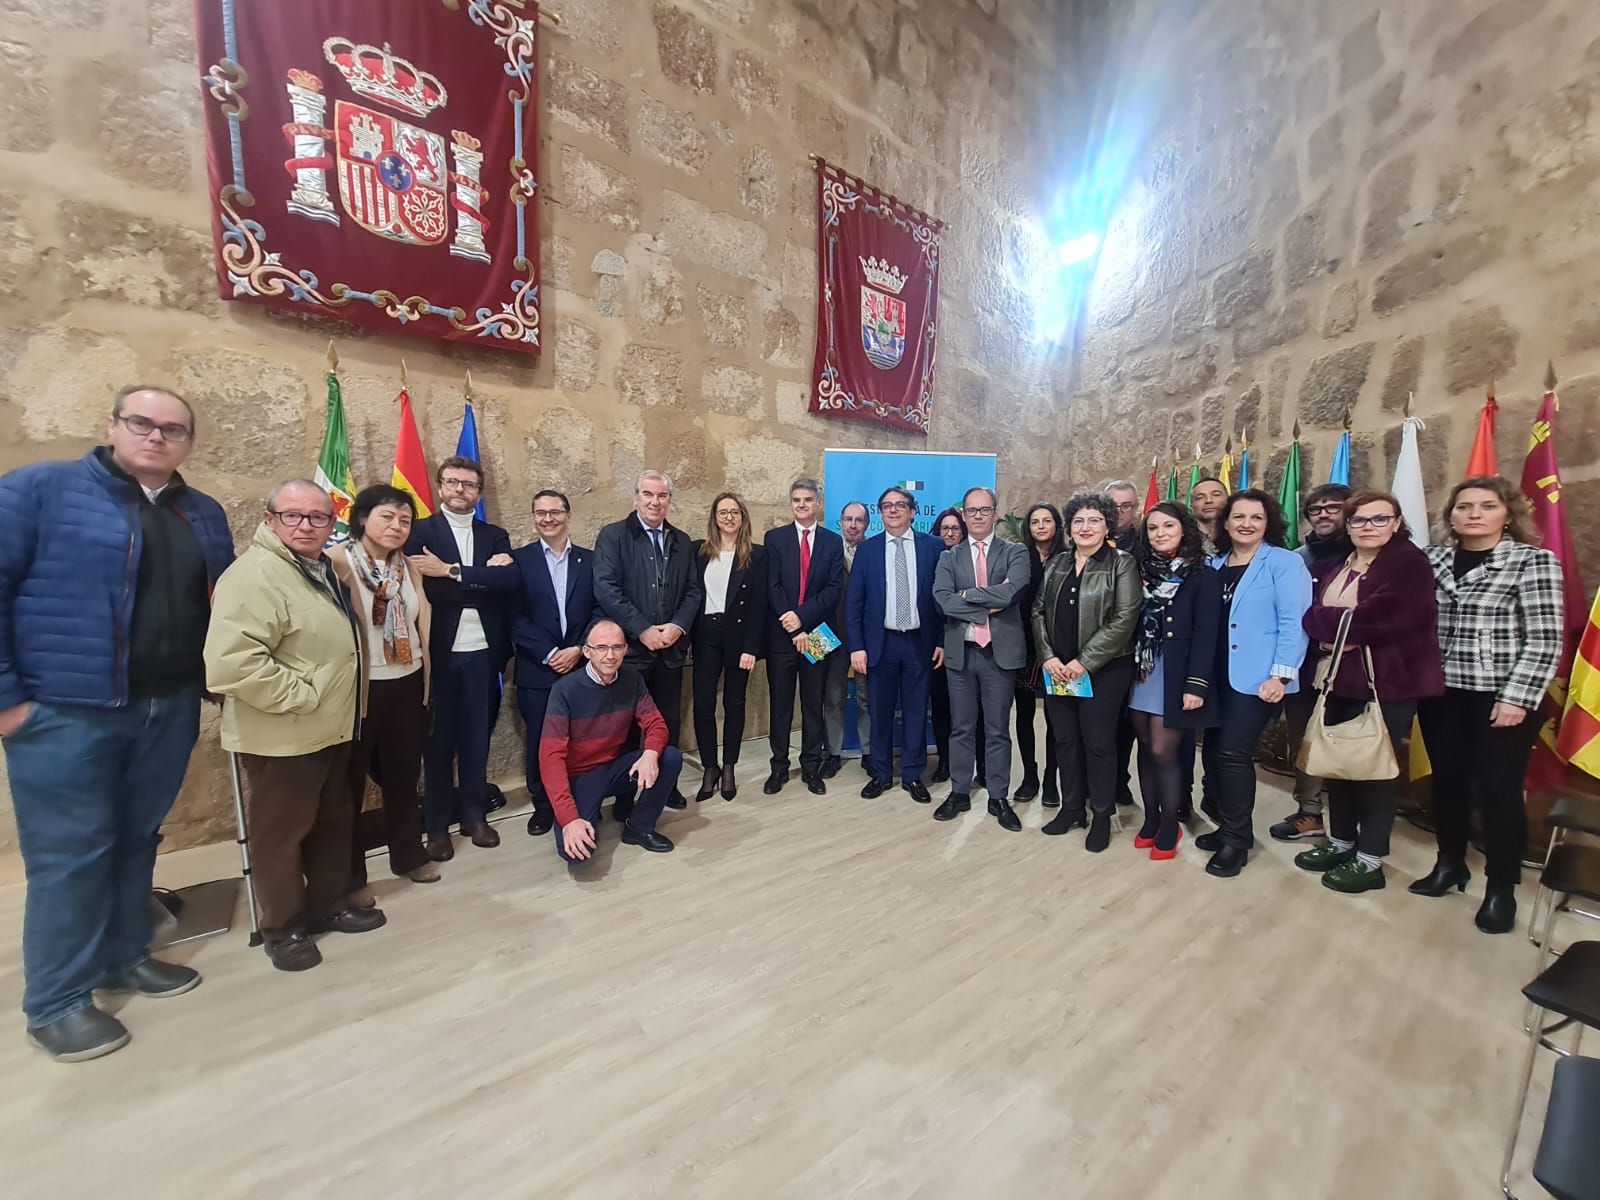 Presentación de la Estrategia de Salud Comunitaria de Extremadura